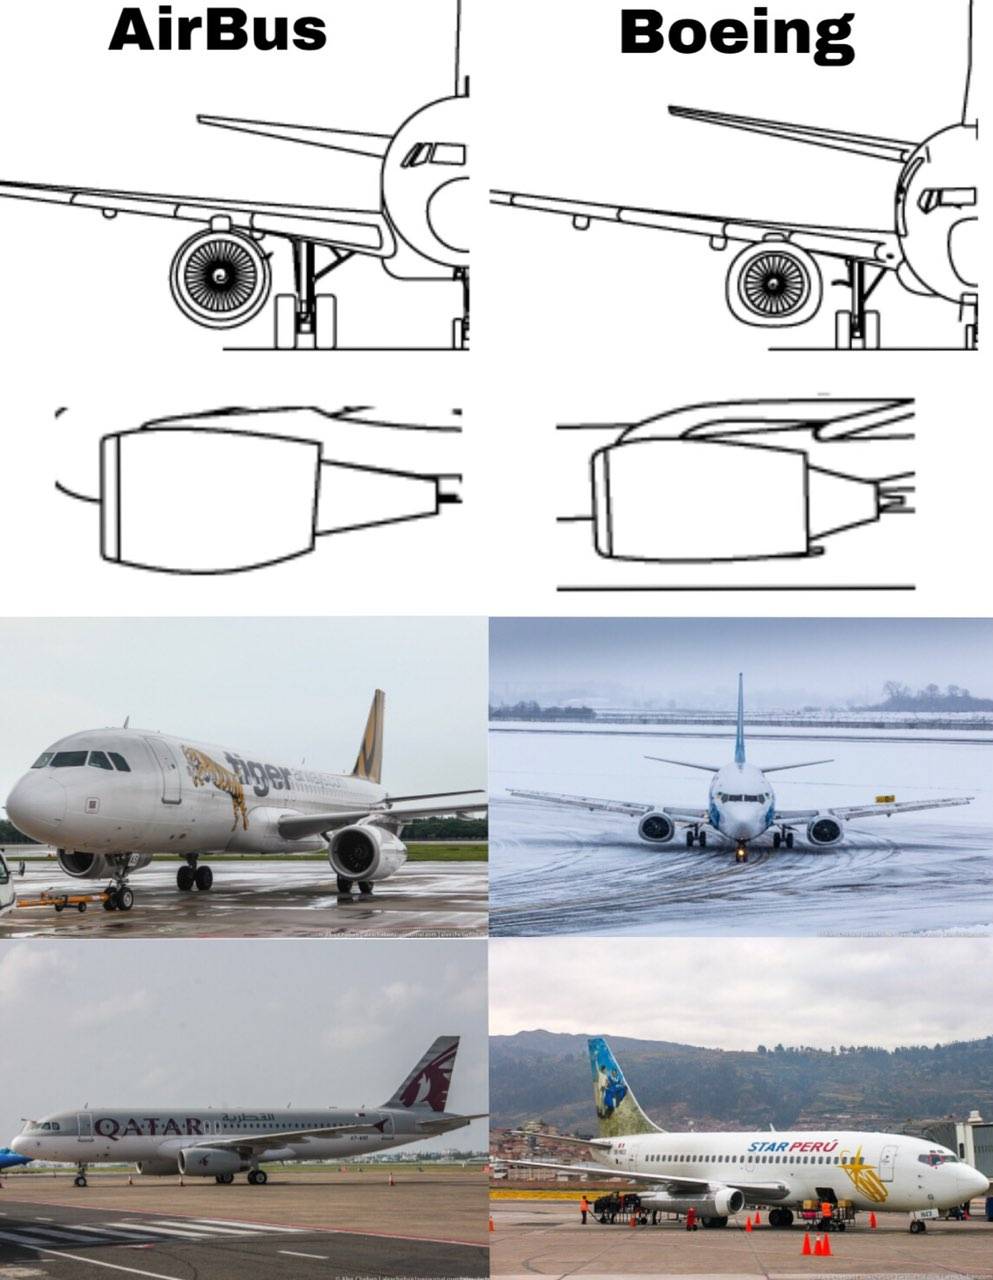 Какой авиалайнер airbus a380 или boeing 747-8i лучше выбрать для перелета?